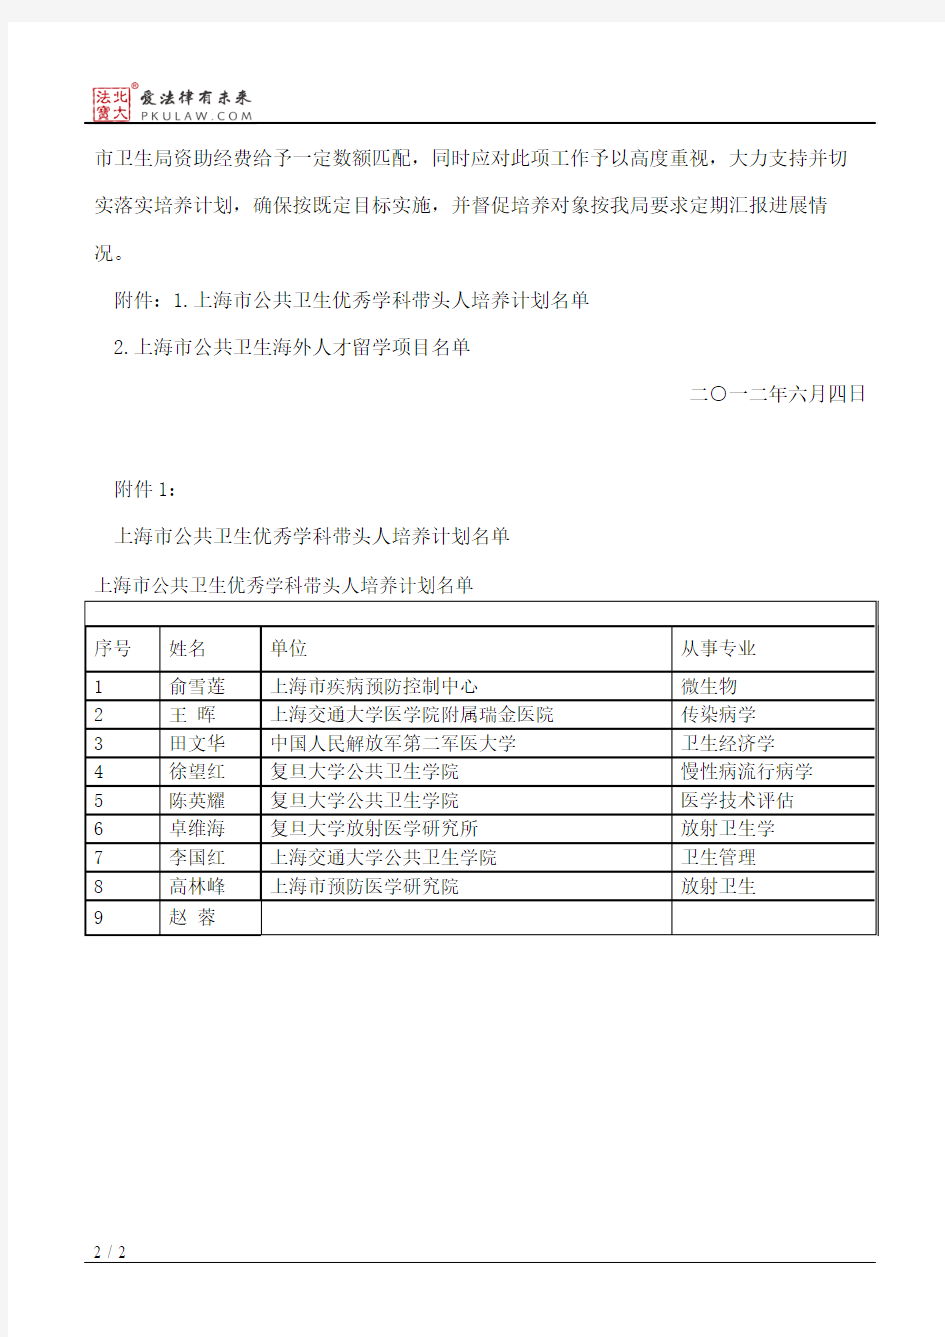 上海市卫生局关于公布上海市公共卫生人才培养计划名单的通知